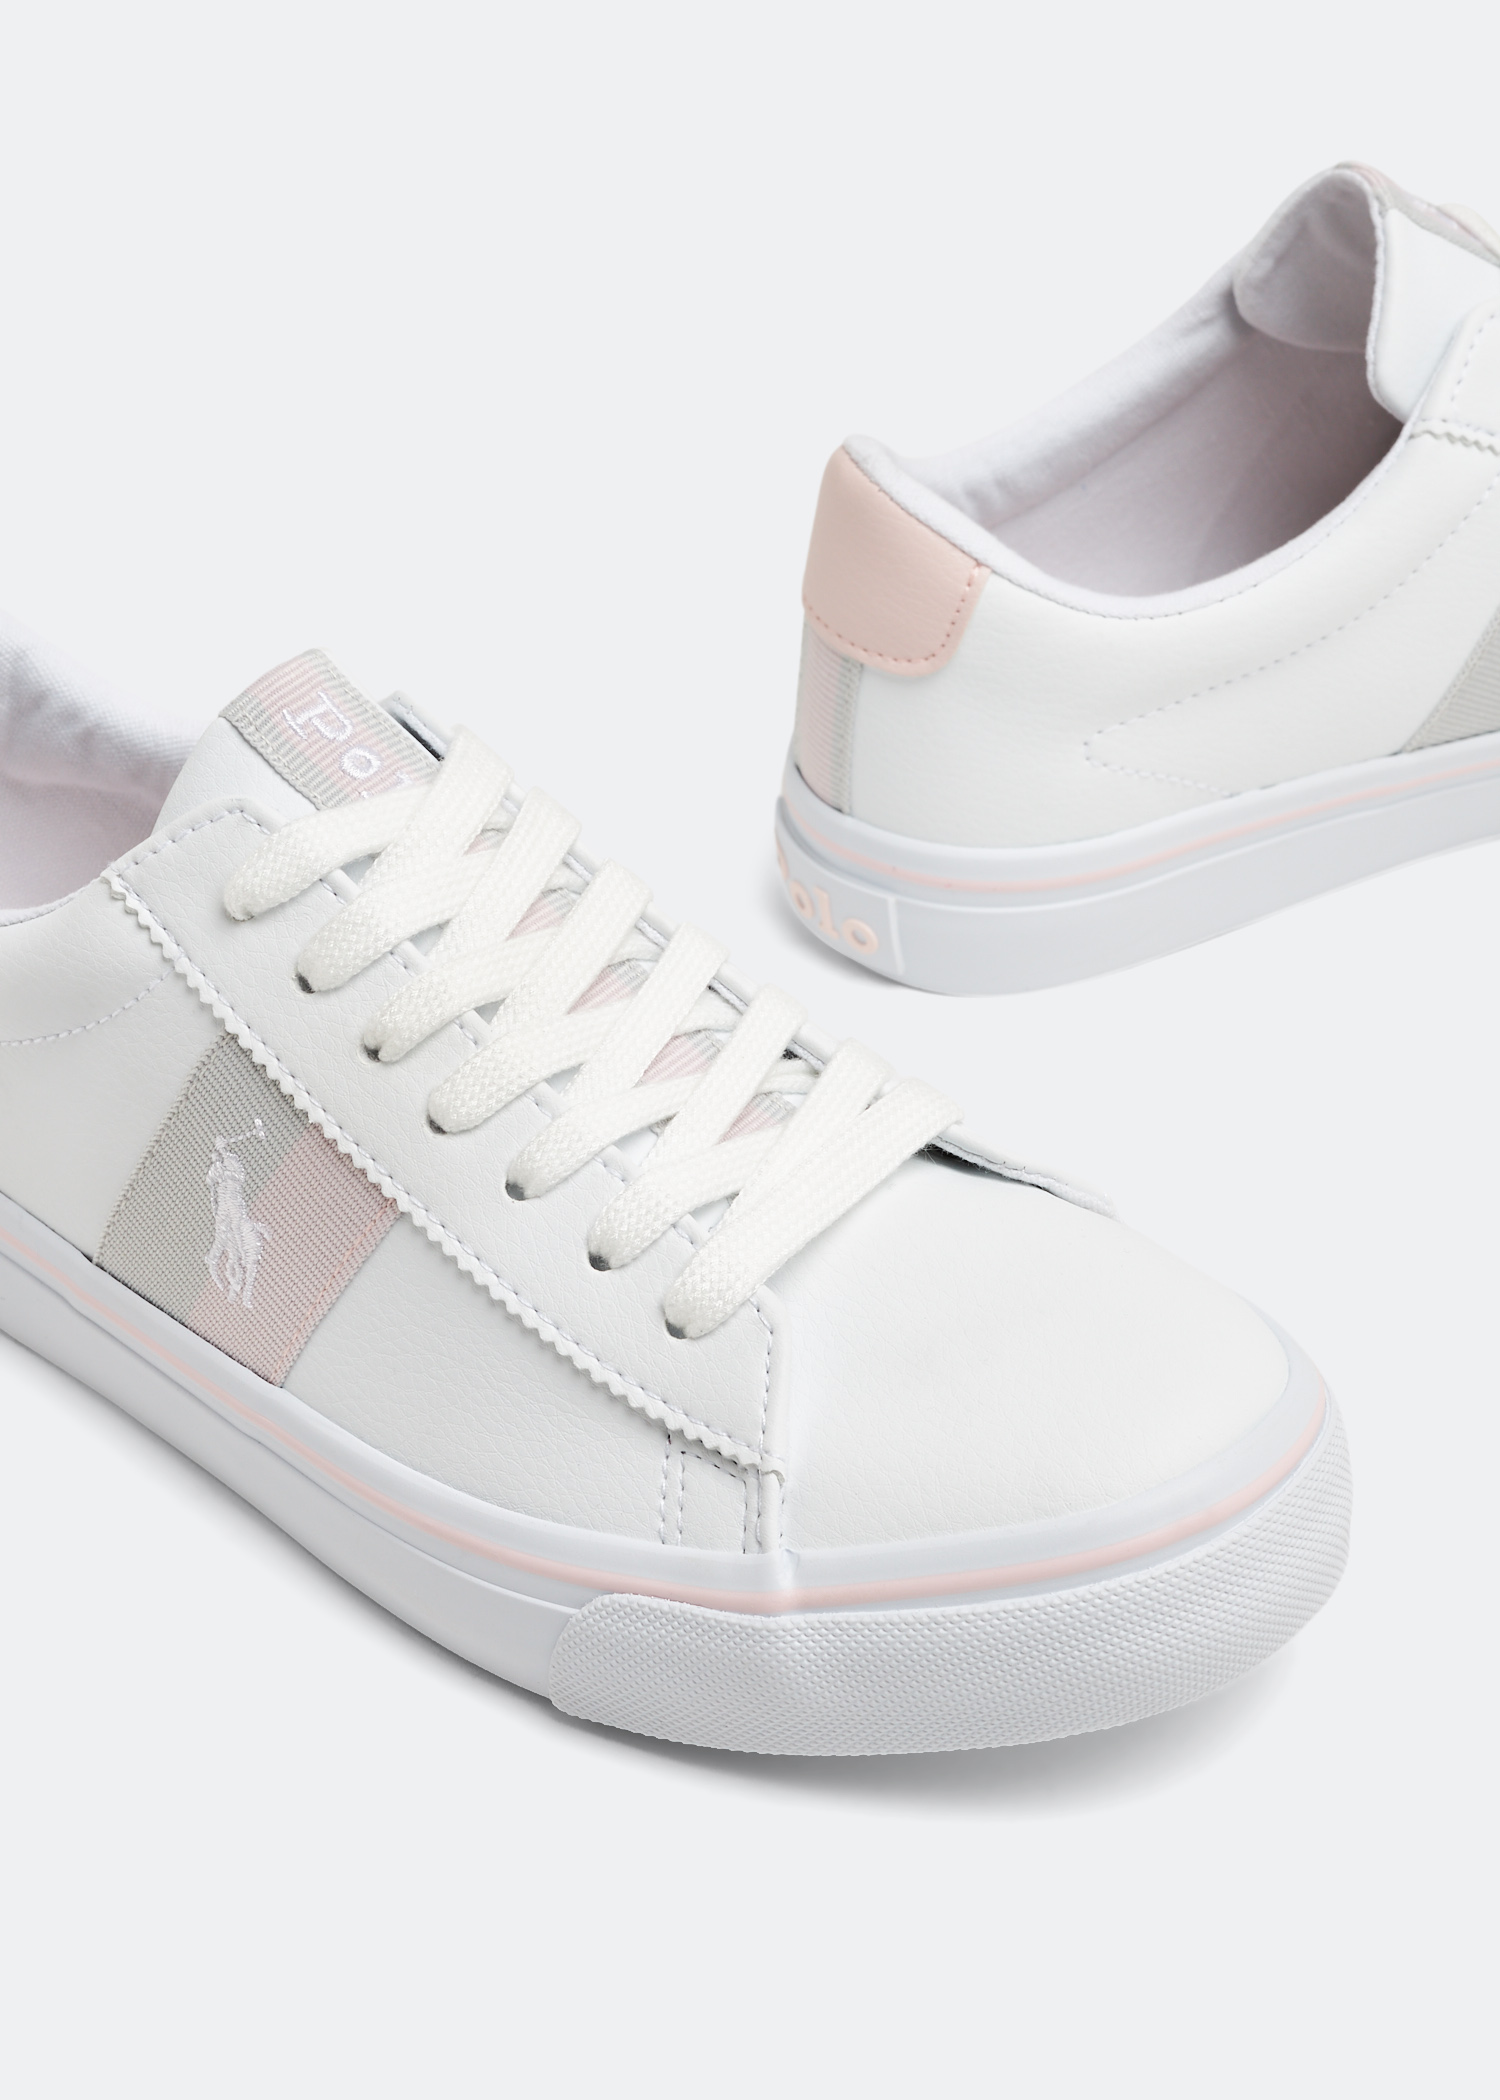 Polo Ralph Lauren Westcott II sneakers for Girl - White in UAE